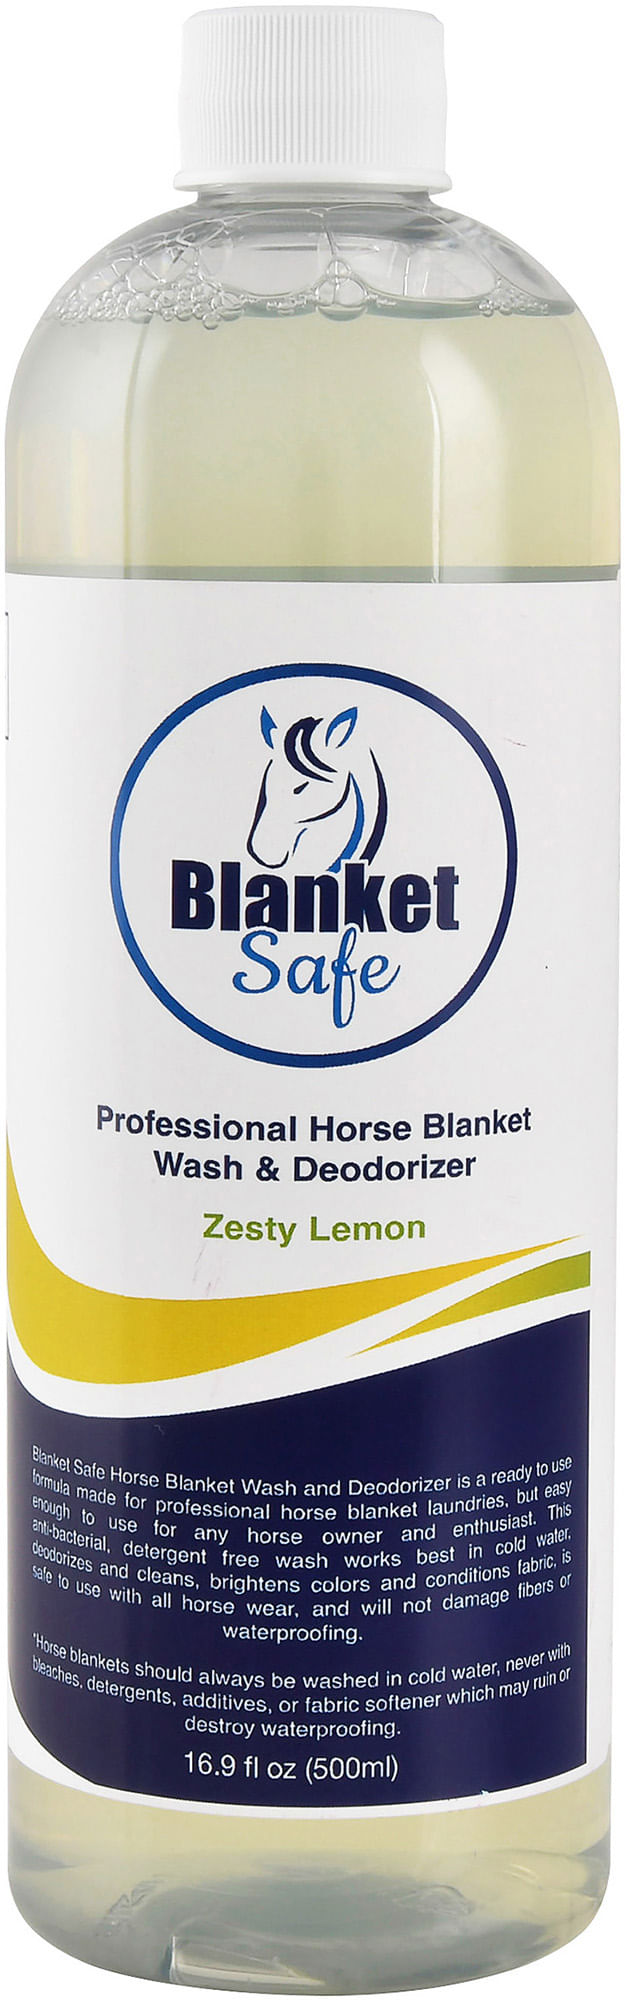 Blanket-Safe-Professional-Horse-Blanket-Wash---Deodorizer-16-oz-